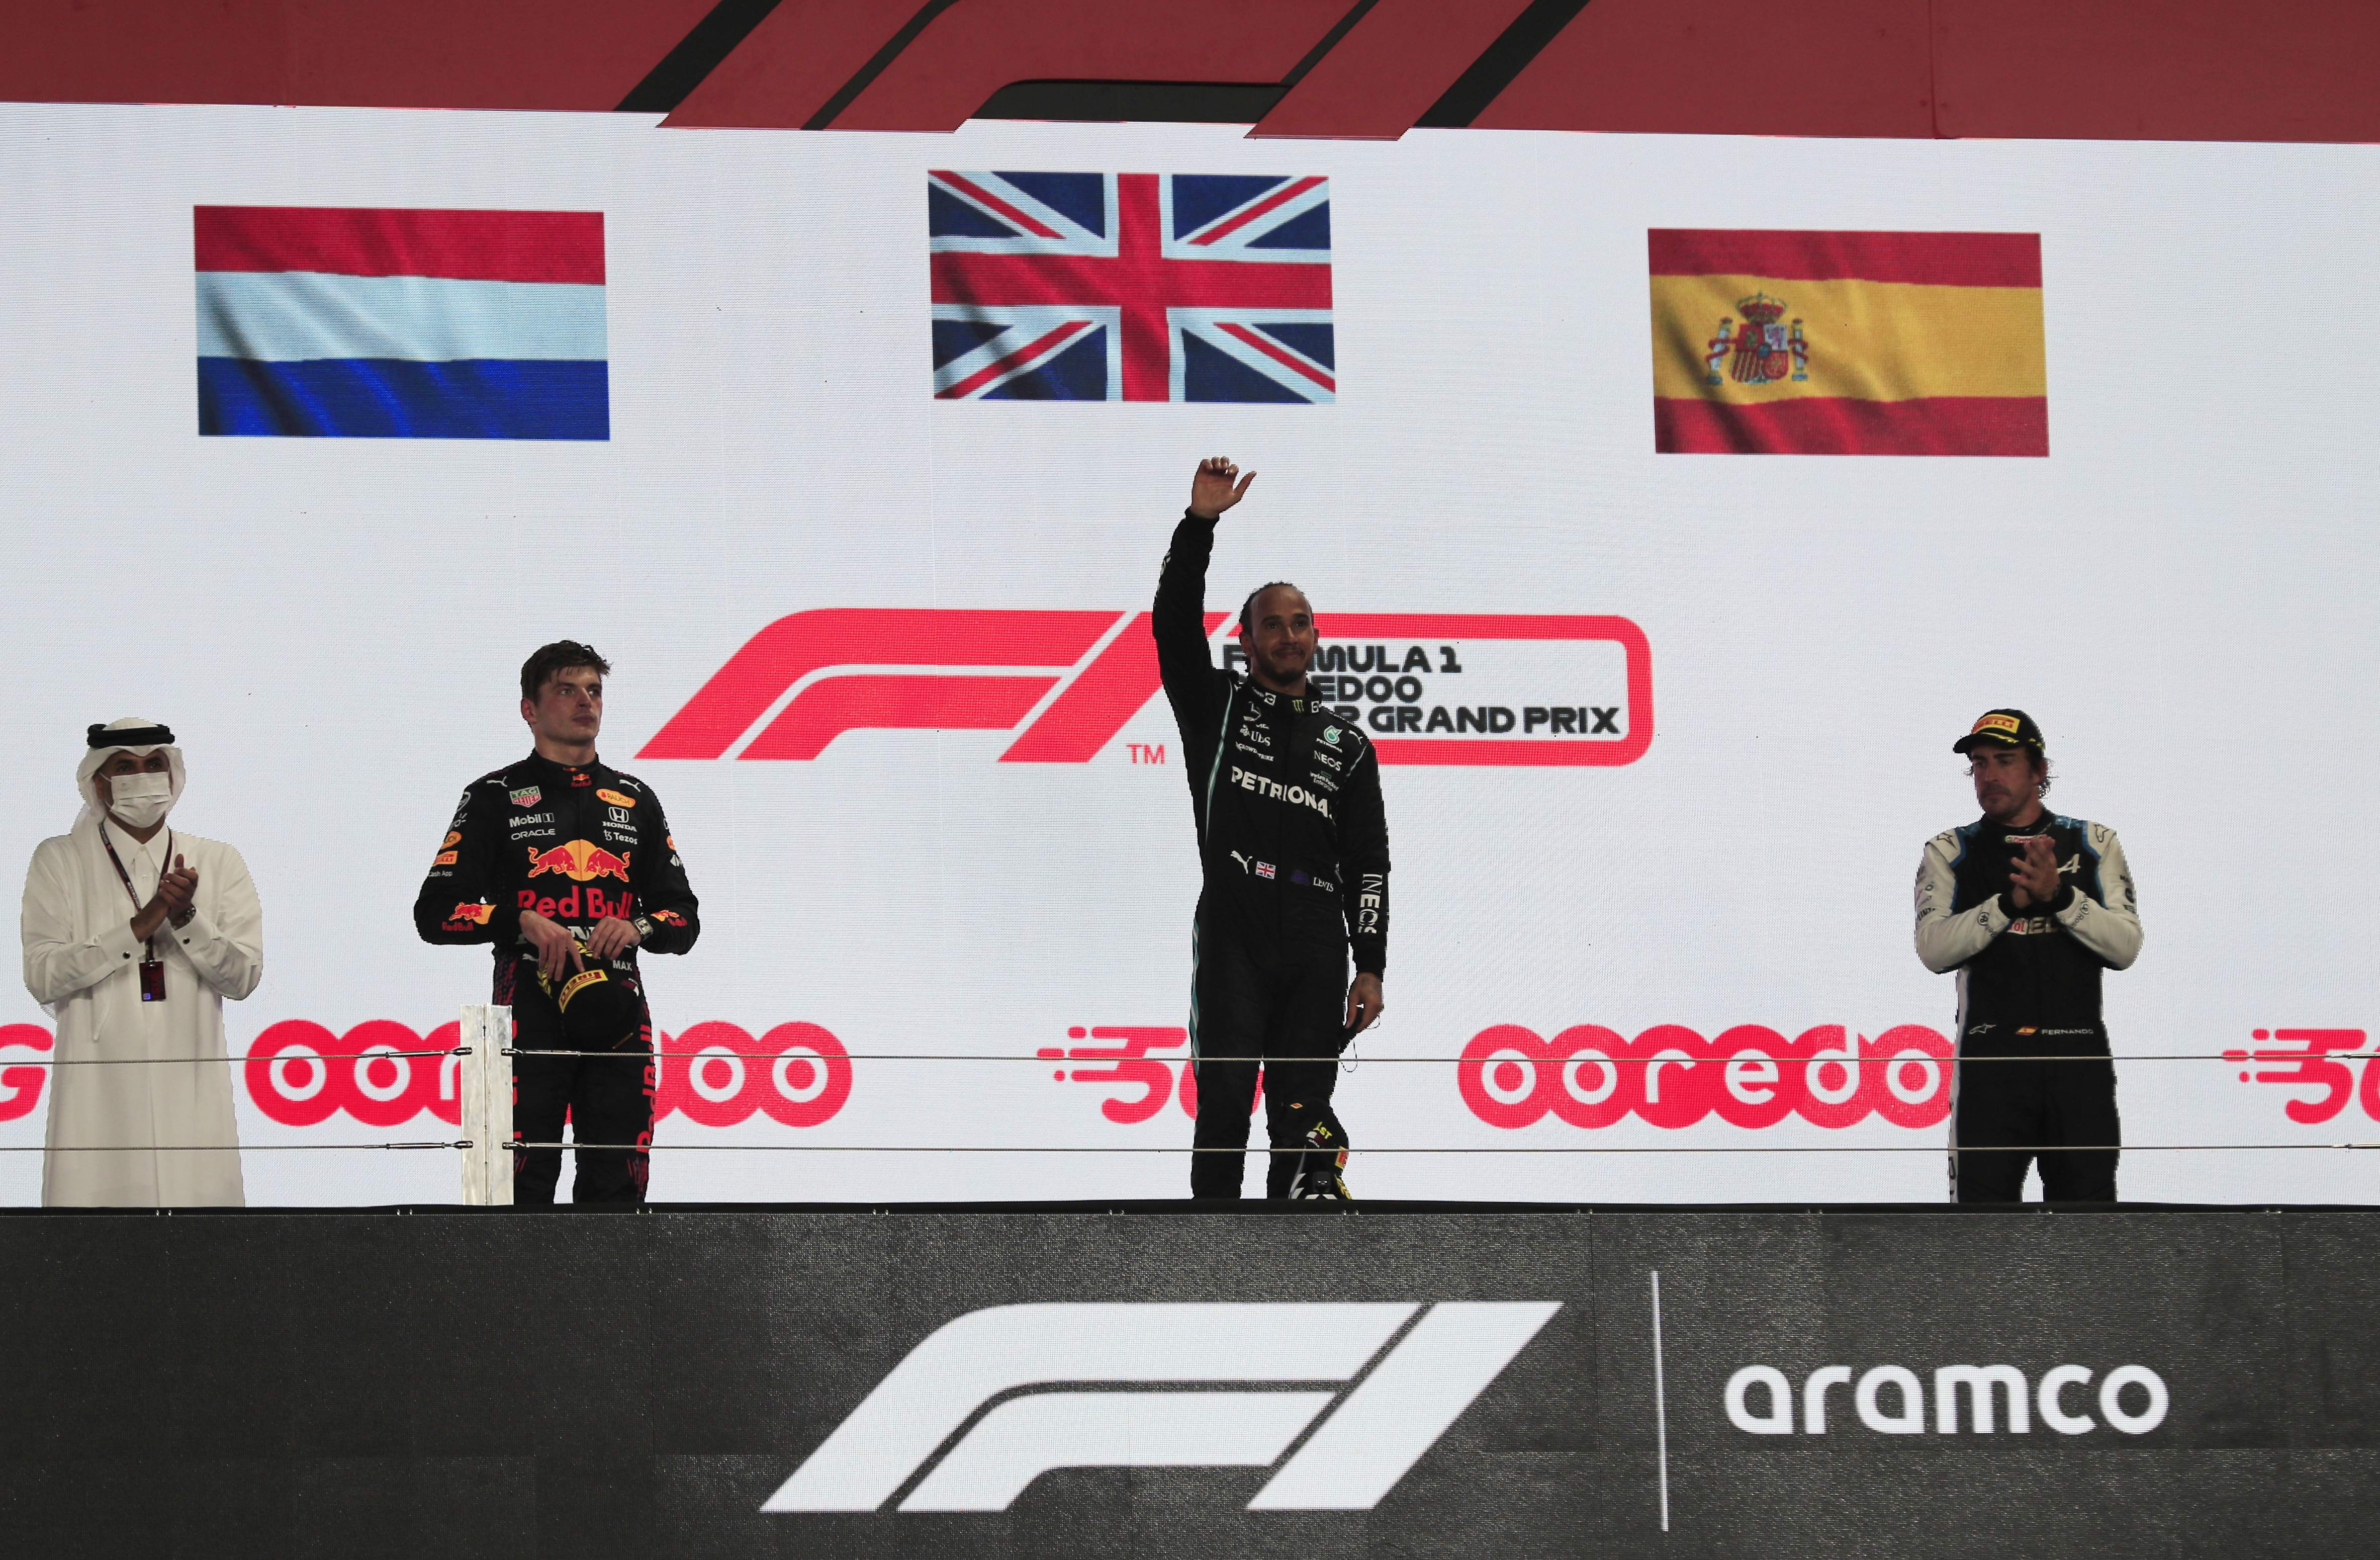 El podio qatarí con Max Verstappen, Lewis Hamilton y Fernando Alonso (REUTERS/Thaier Al-Sudani)